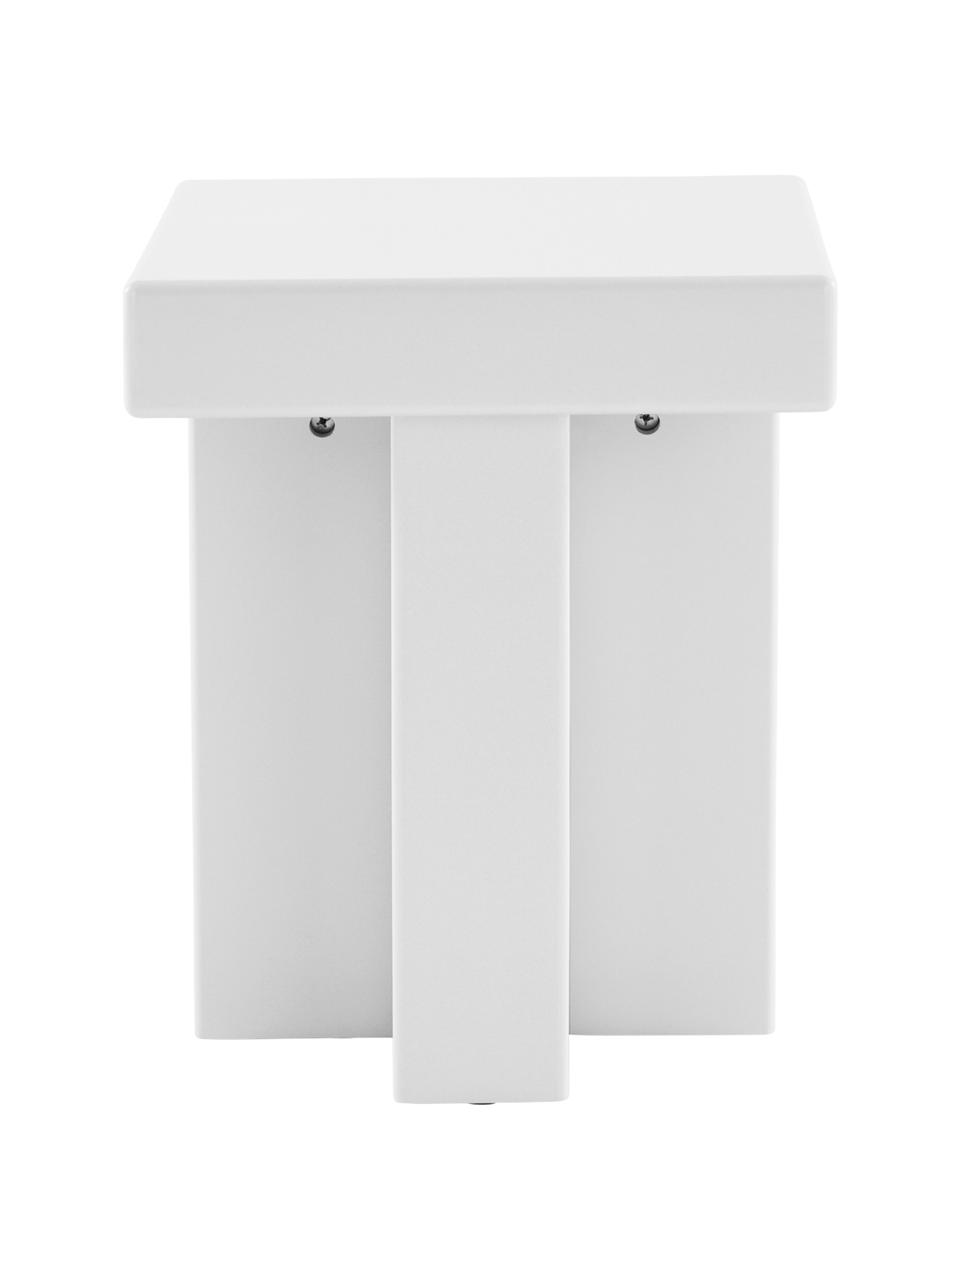 Table d'appoint Crozz, MDF (panneau en fibres de bois à densité moyenne), laqué, Blanc, larg. 40 x haut. 58 cm